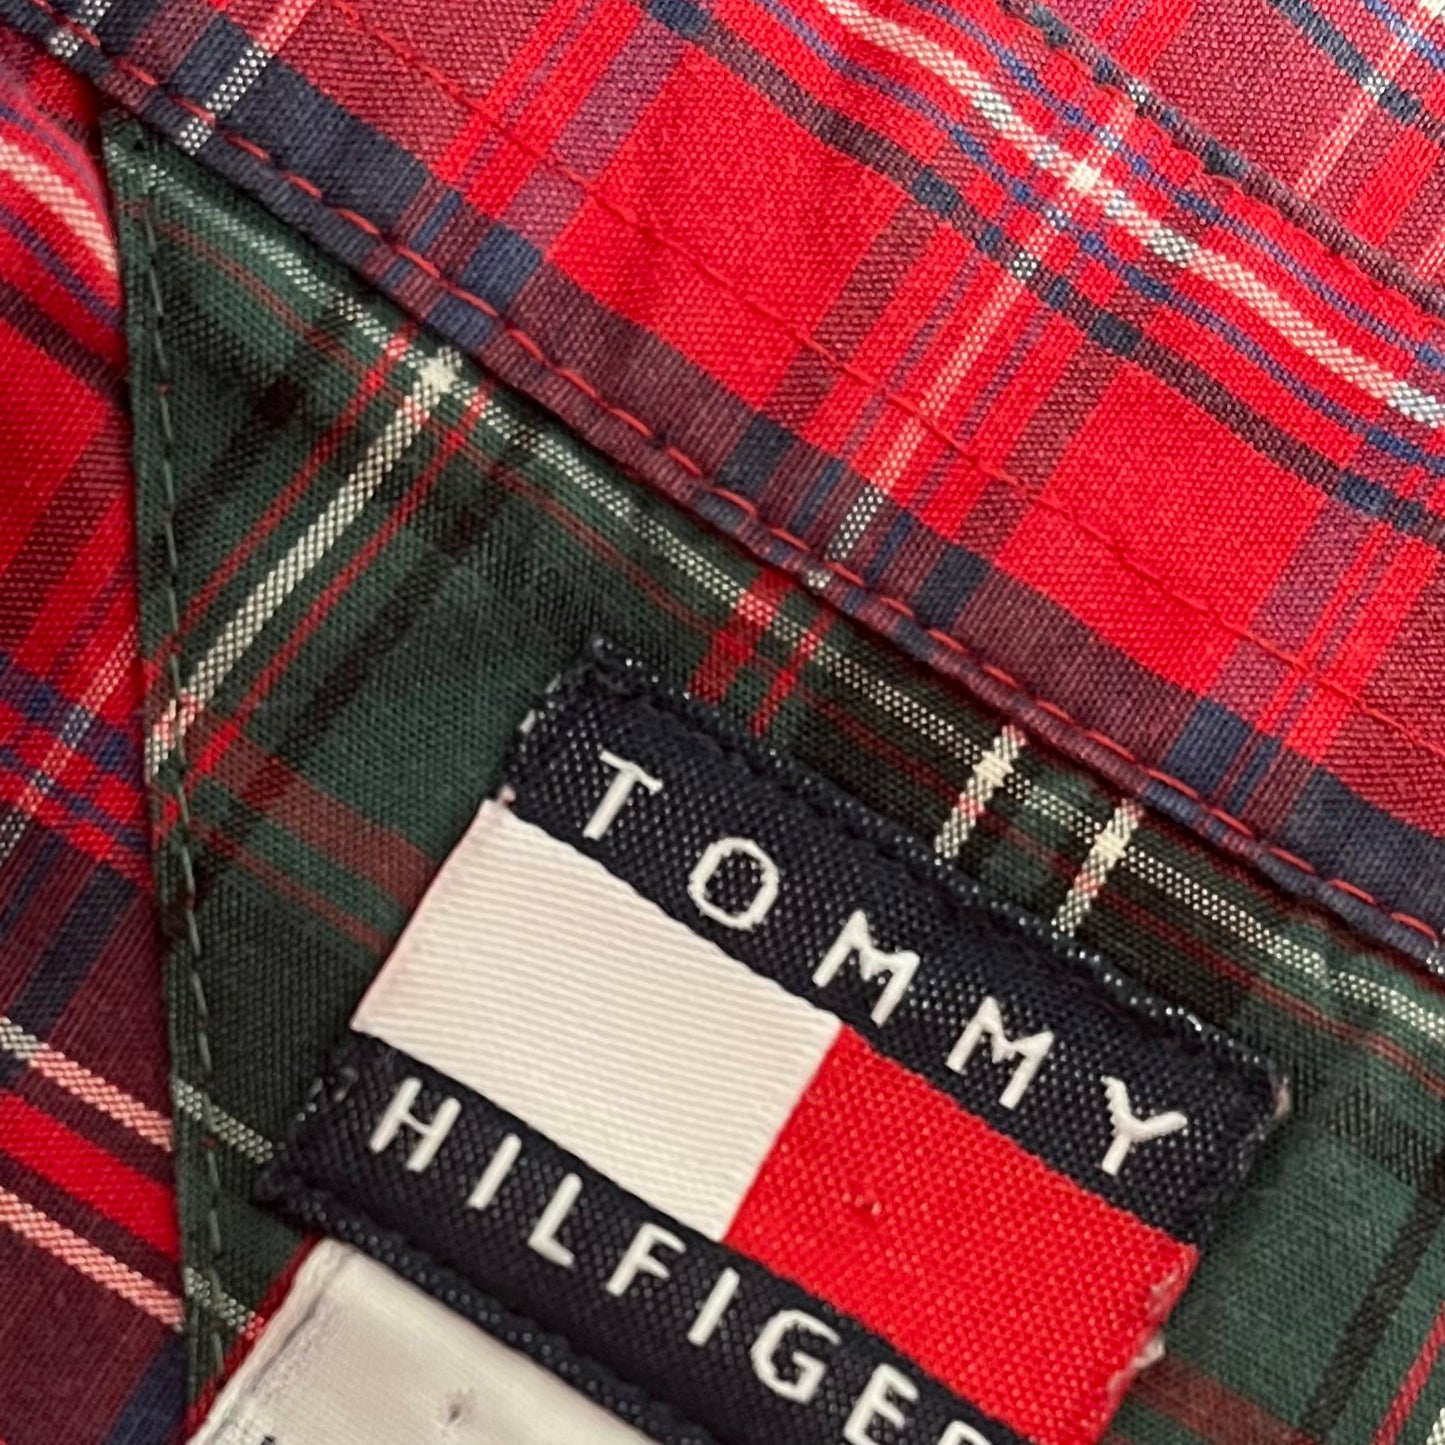 Camicia manica lunga Tommy Hilfiger rossa bianca e blu taglia XS